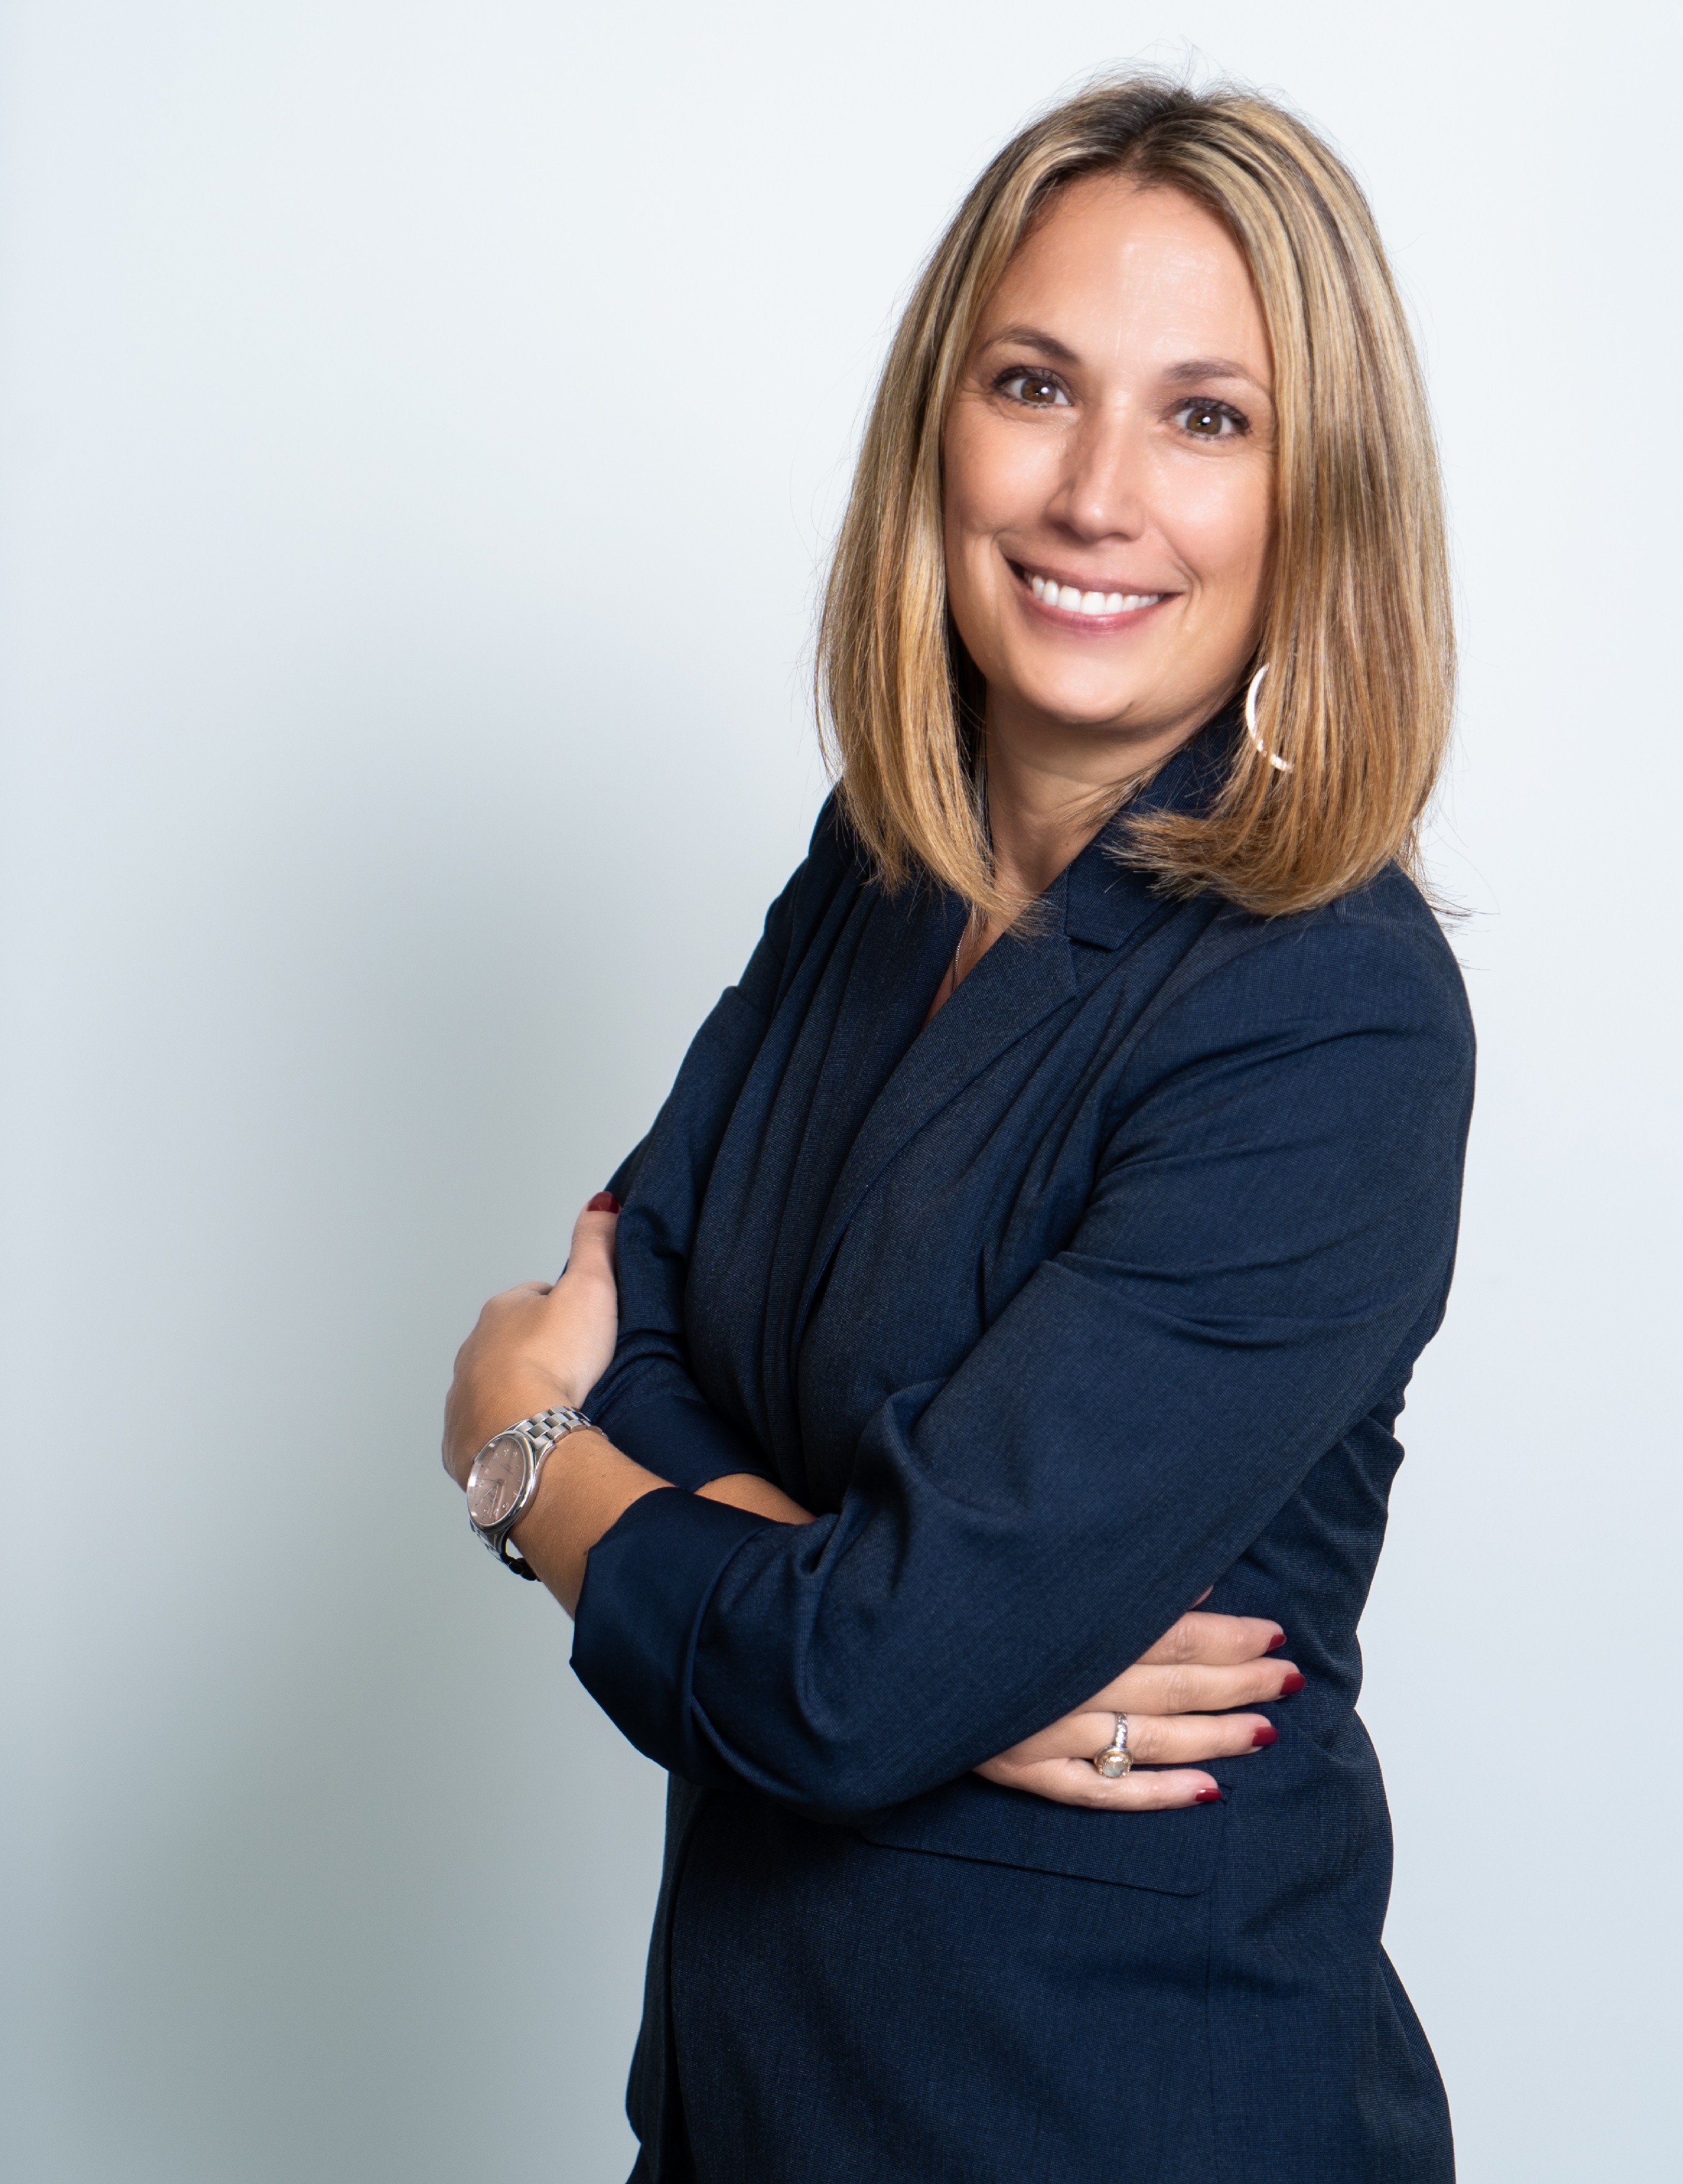 Colette Matz Named New Country President of Novartis Hungary